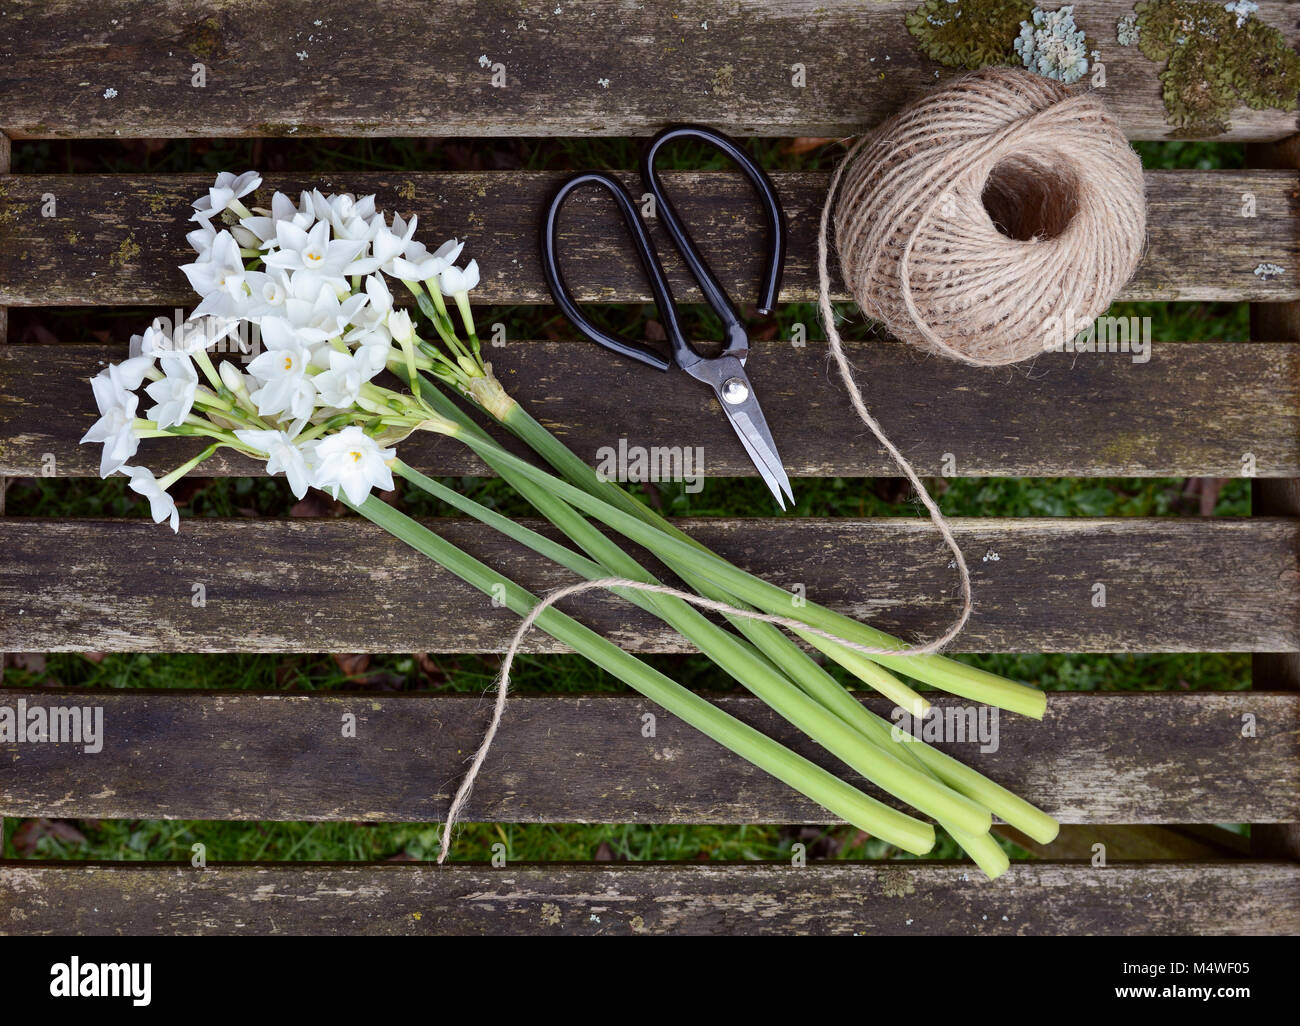 Ball der Garn- und Gartenarbeit Schere mit ein Bündel weißer Narzissen Blumen auf einem holzstäbchen Sitzbank Stockfoto